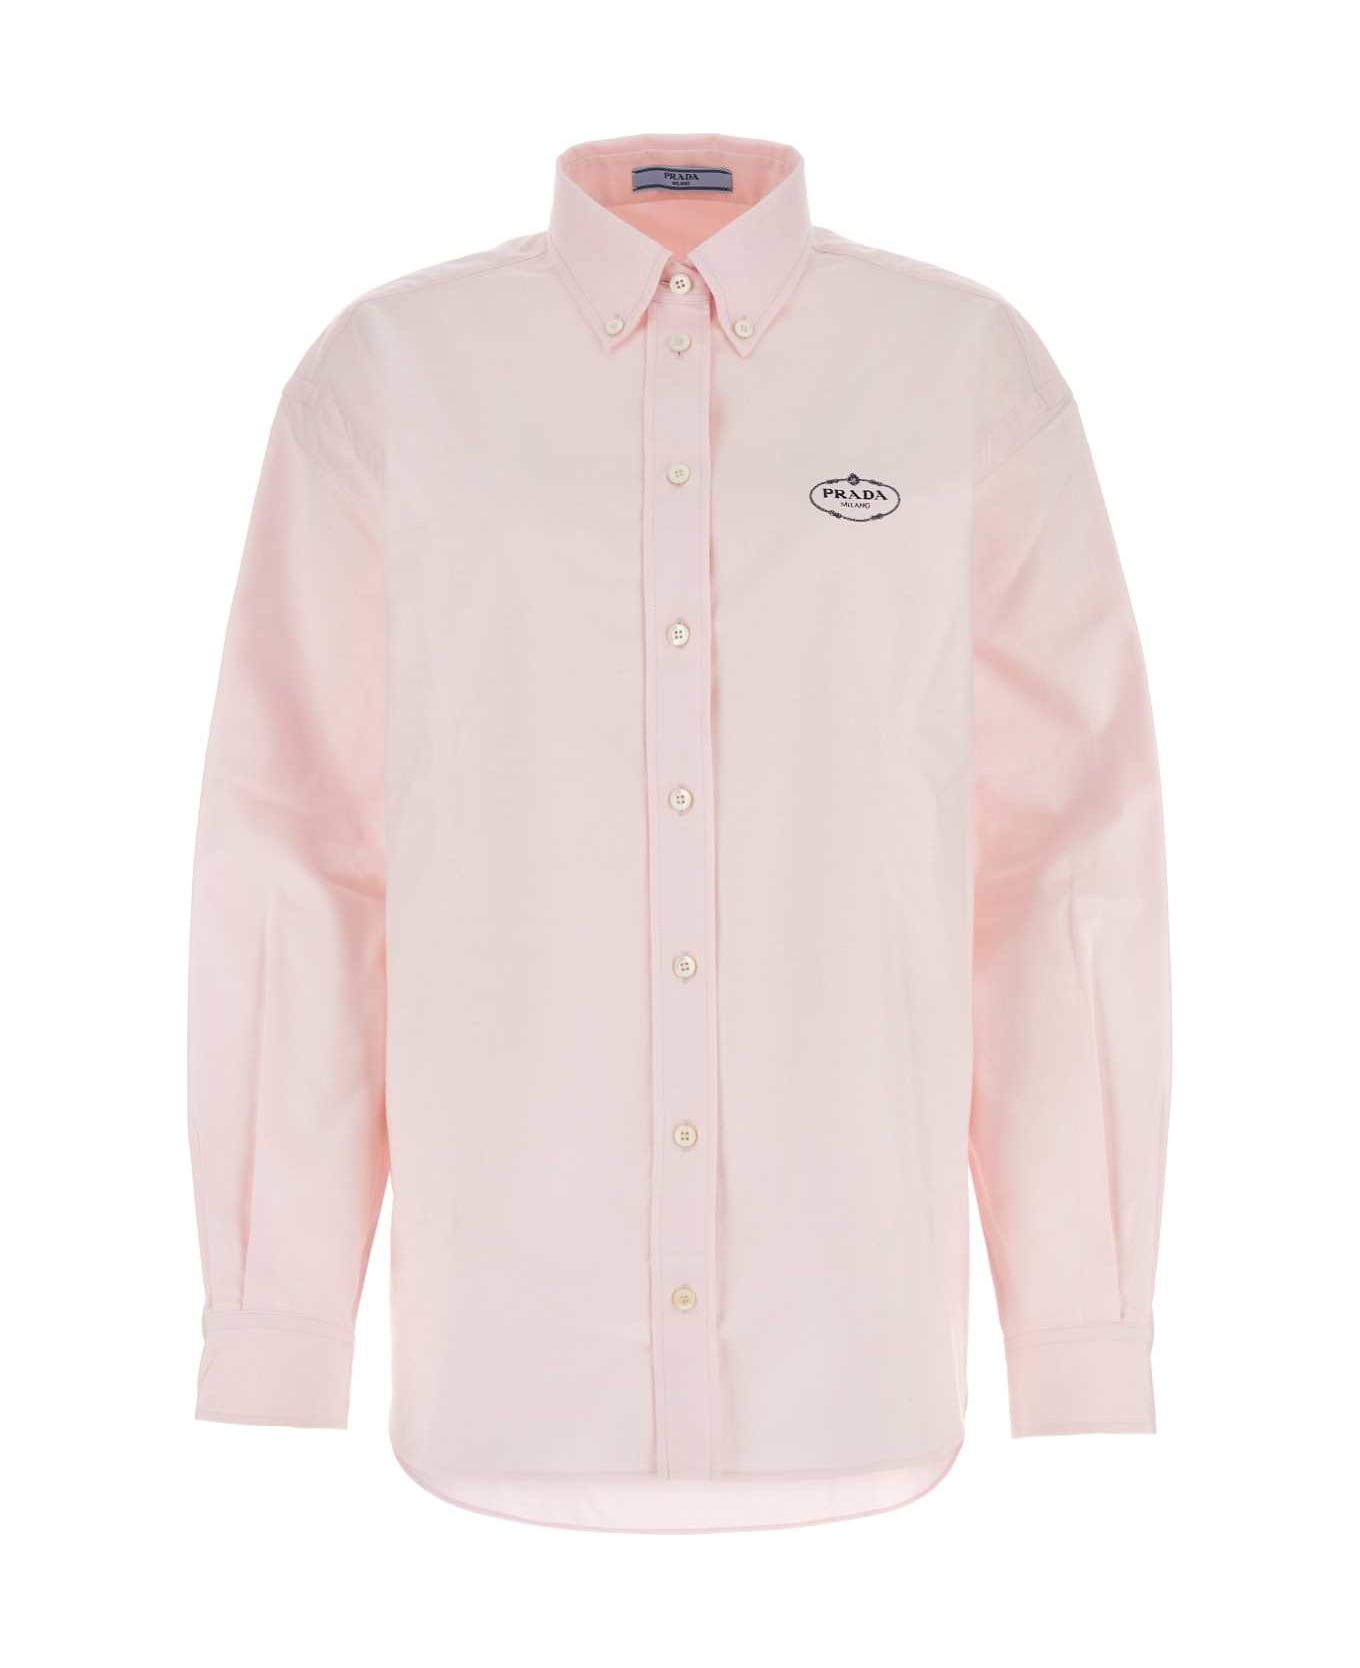 Prada Light Pink Oxford Oversize Shirt - ROSA